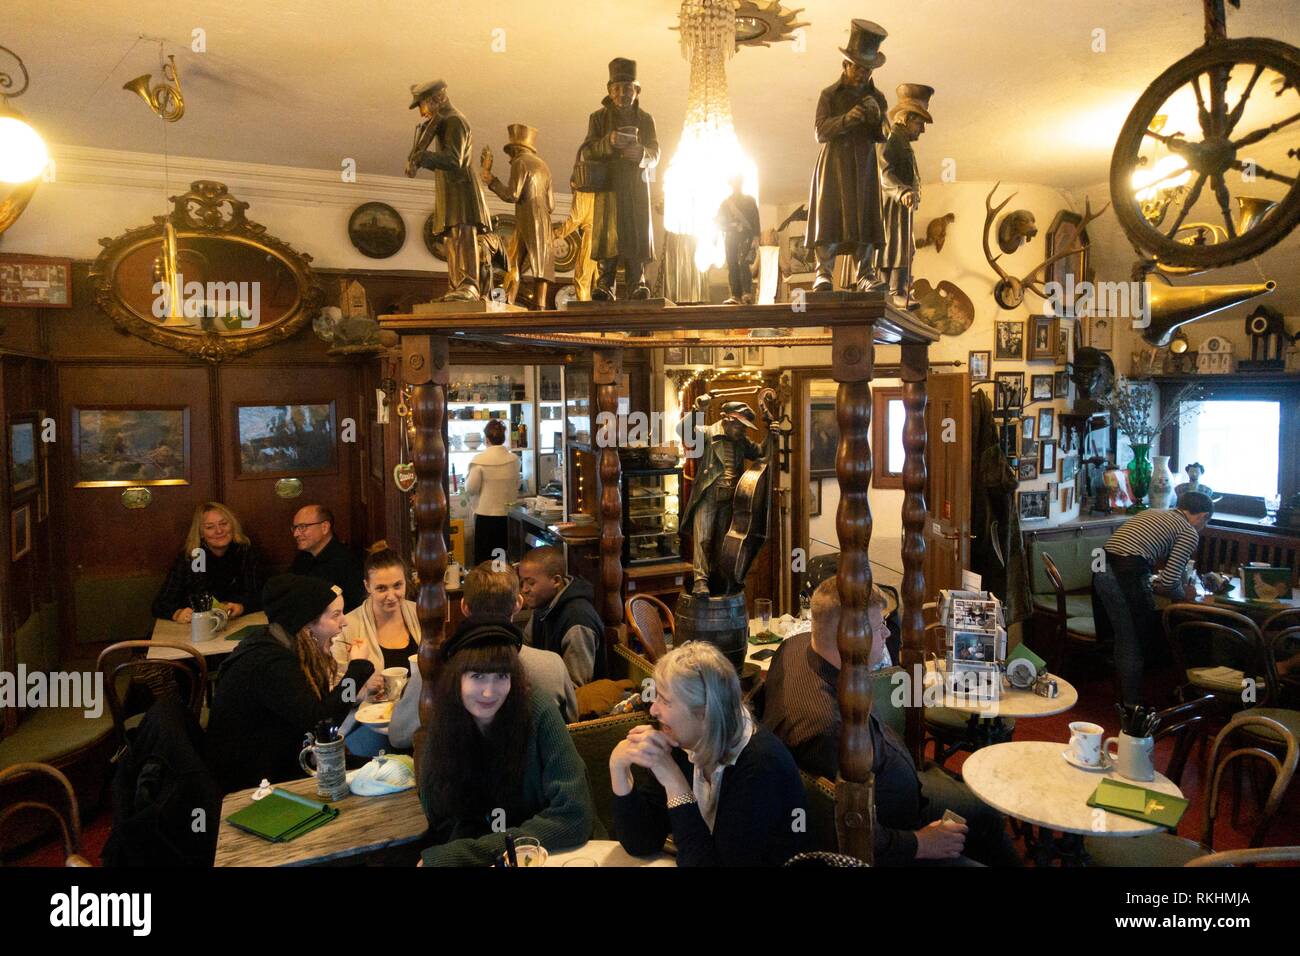 Visitors in Cafe, Valentin-Karlstadt-Musäum, Munich, Bavaria, Germany Stock Photo